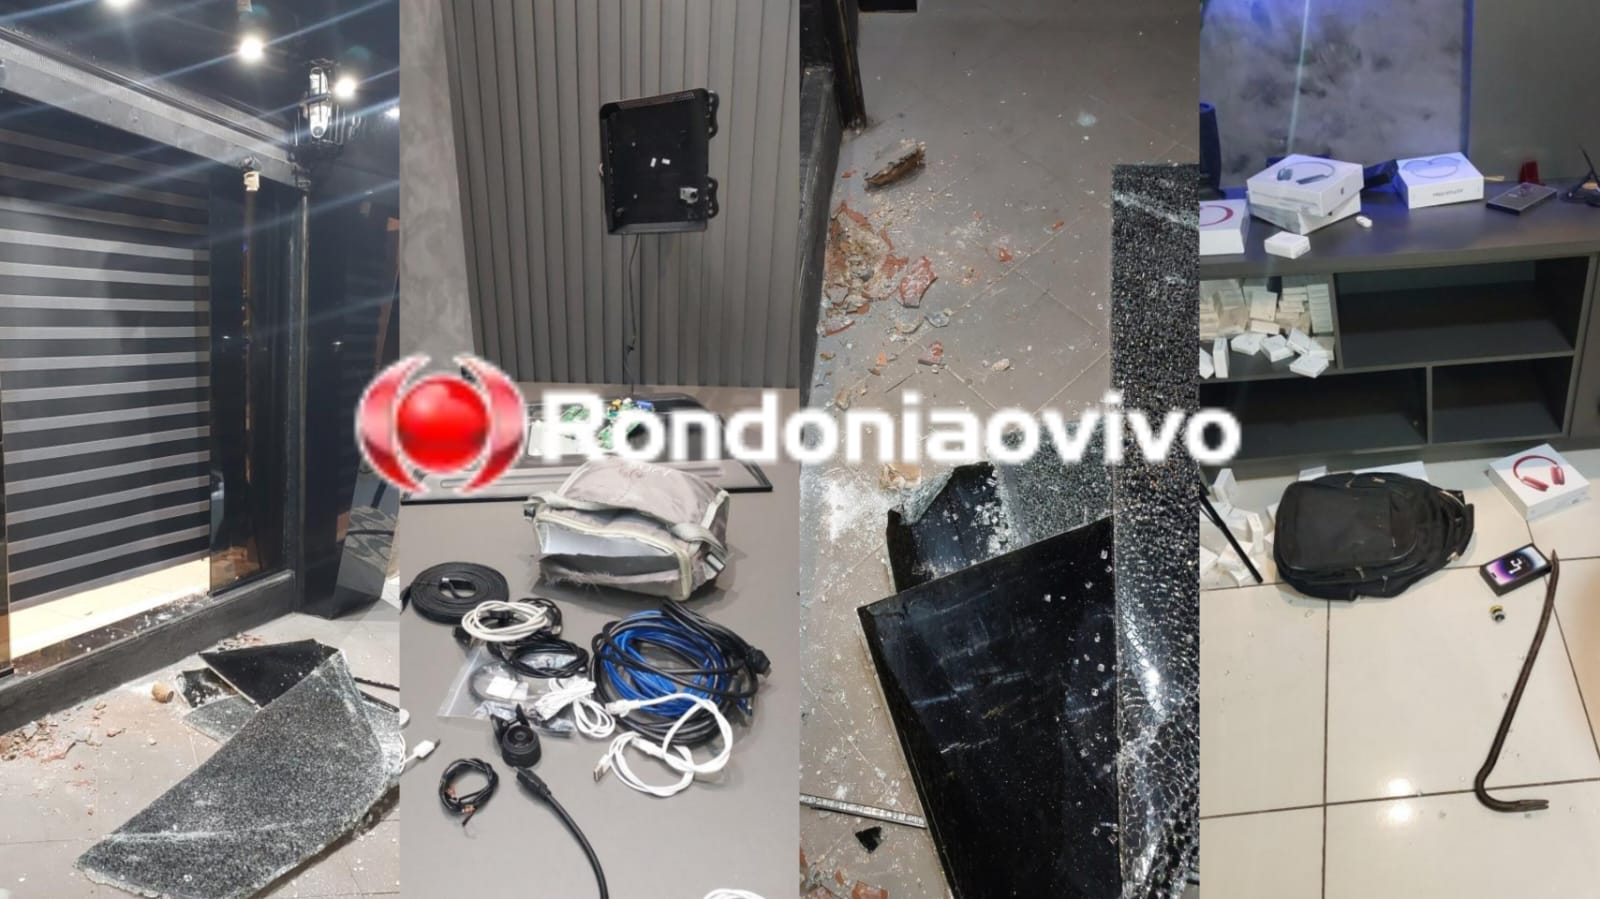 NA MADRUGADA: Quadrilha faz arrastão em loja de iPhones em Porto Velho 